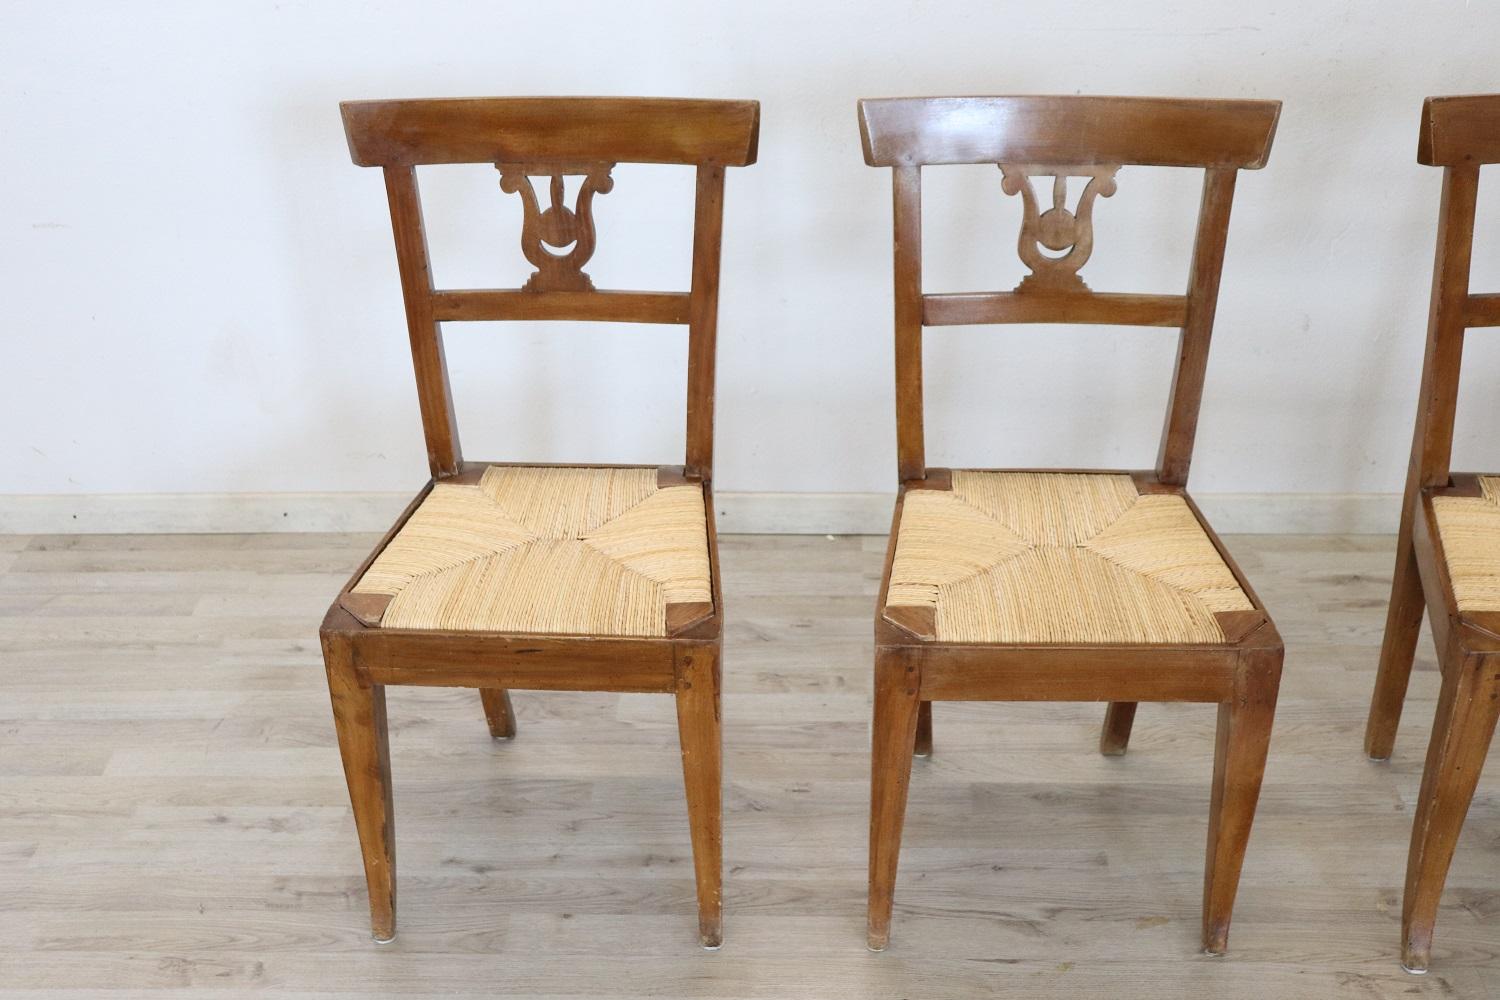 Serie von vier raffinierten frühen 19. Jahrhundert authentischen italienischen Empire Nussbaumholz vier Stühle. Raffinierte Dekoration der Rückseite ist in der Form einer Leier geschnitzt. Die Beine sind sehr elegant gerade. Der Sitz ist breit und